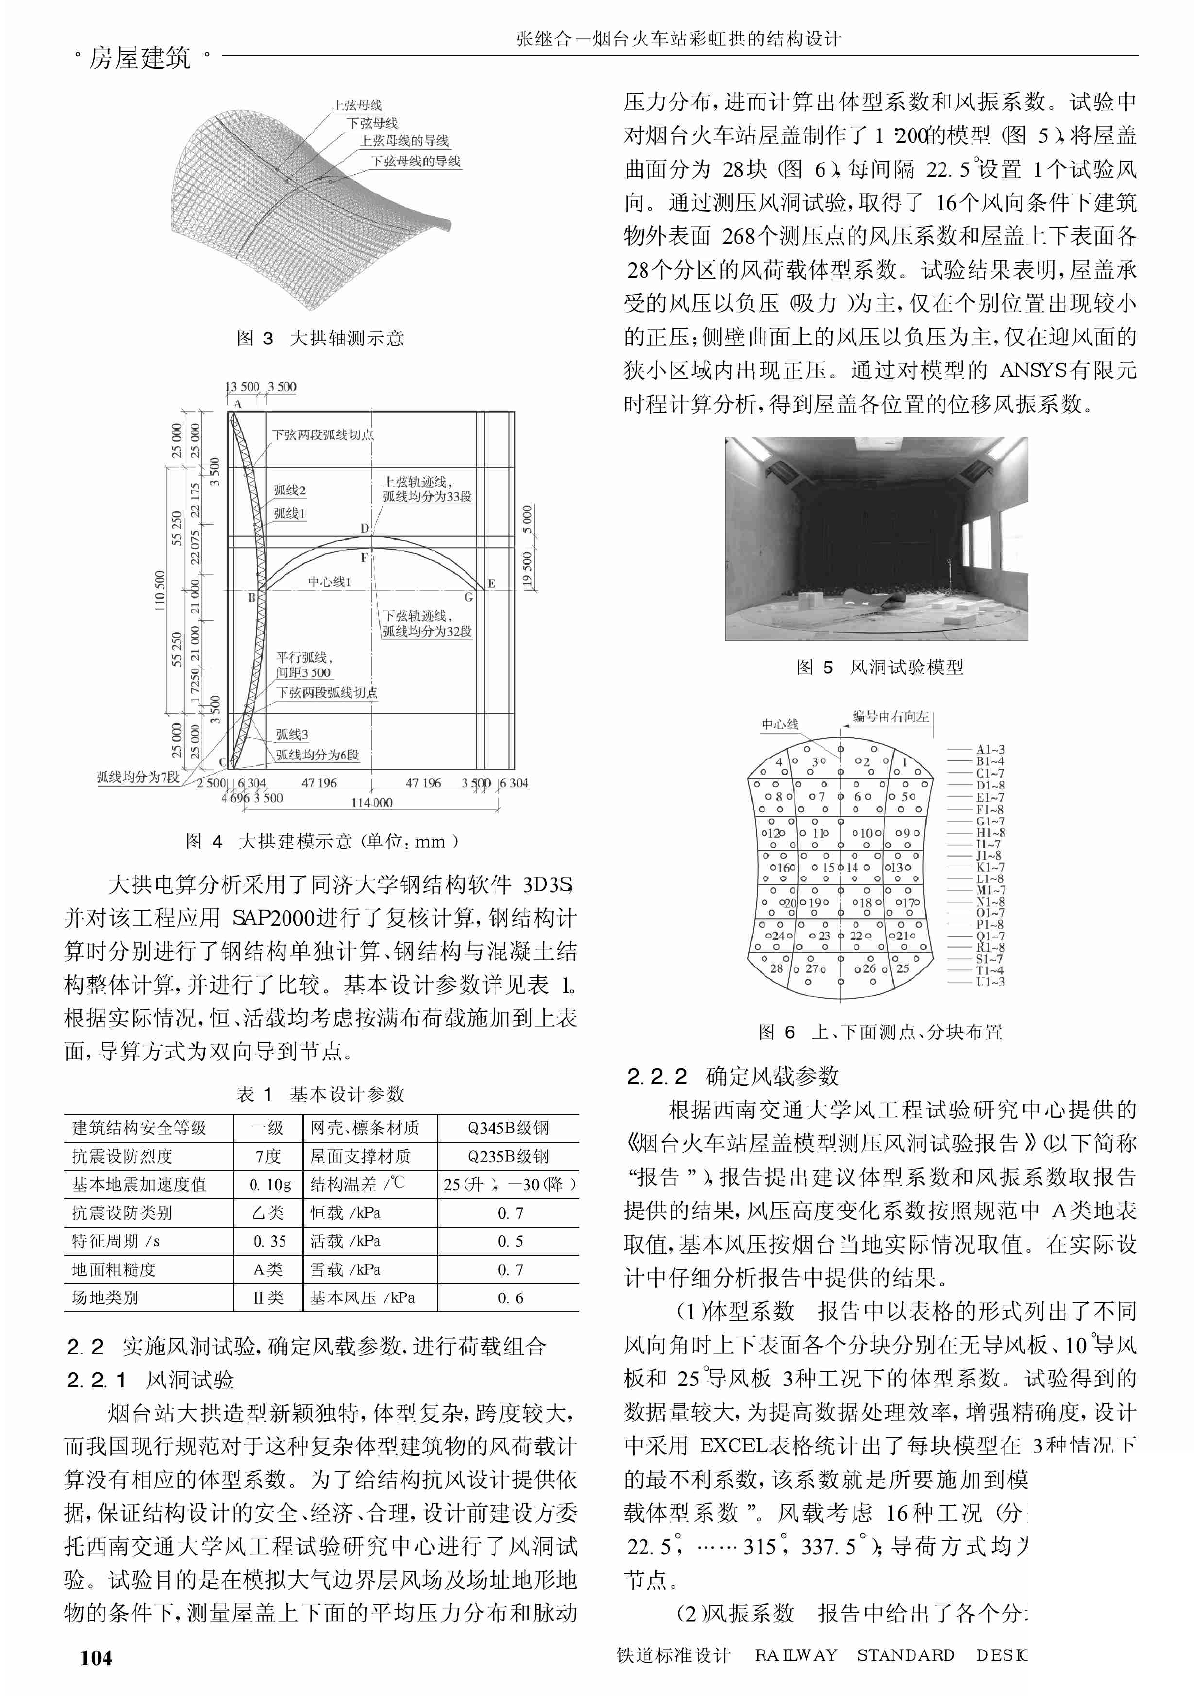 烟台火车站彩虹拱的结构设计_张继合.pdf-图二